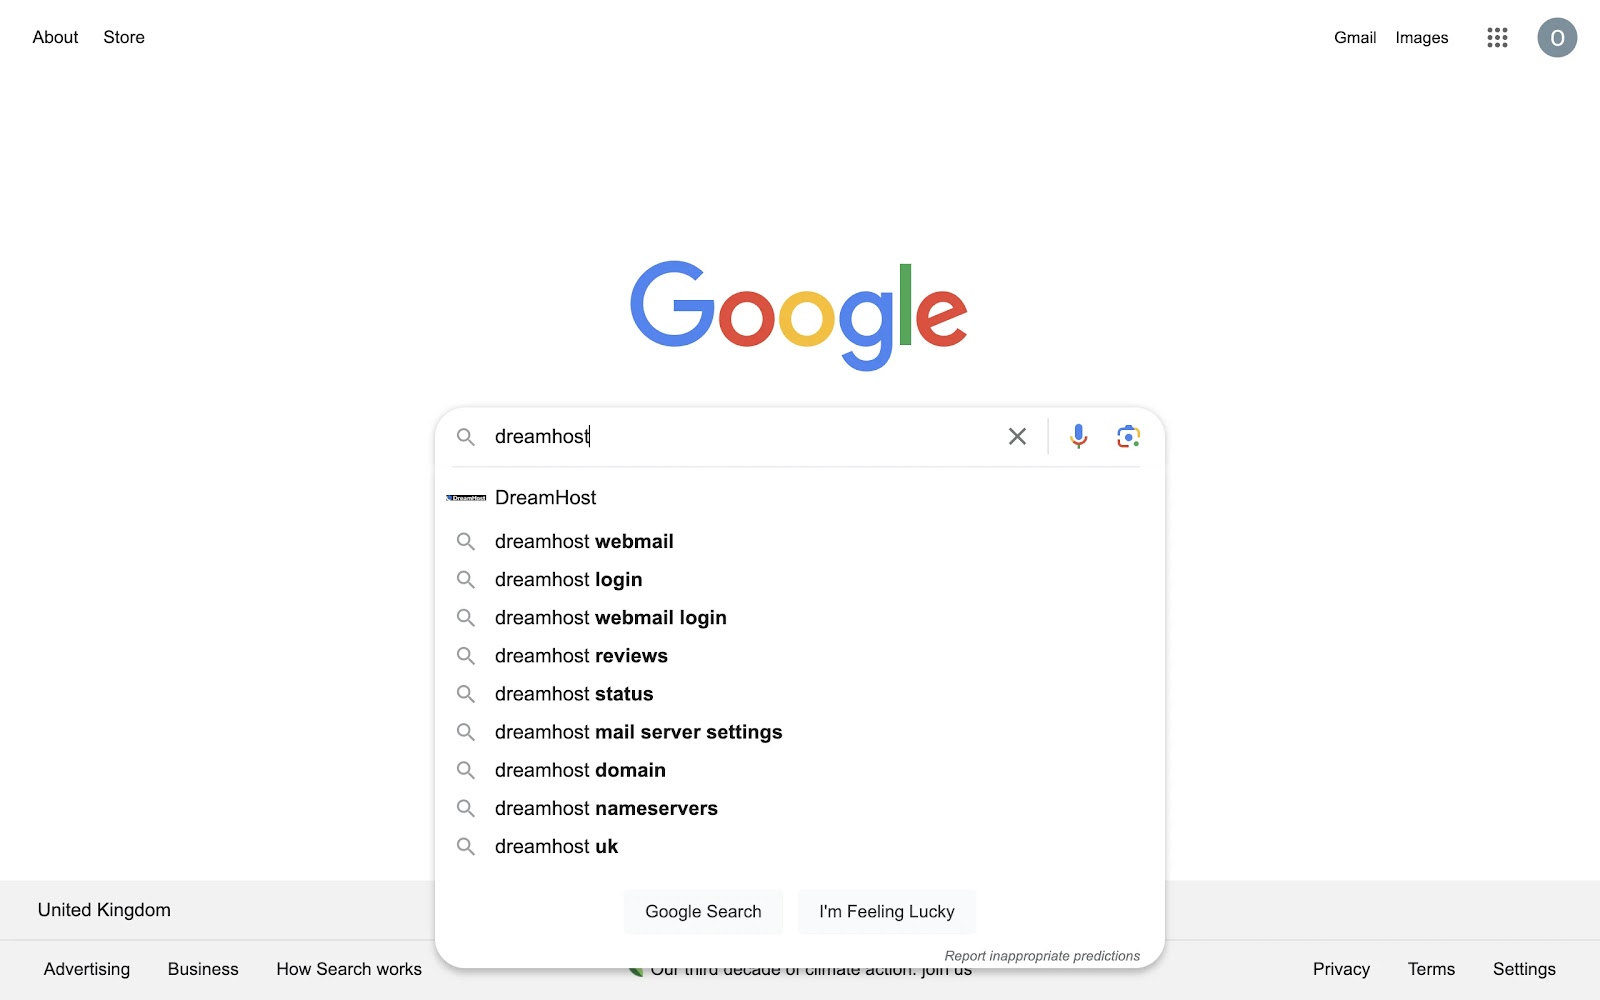 Busqueda en Google "dreamhost" con búsquedas relacionadas que muestran el correo web de dreamhost, el inicio de sesión de dreamhost, las reseñas de dreamhost, etc.